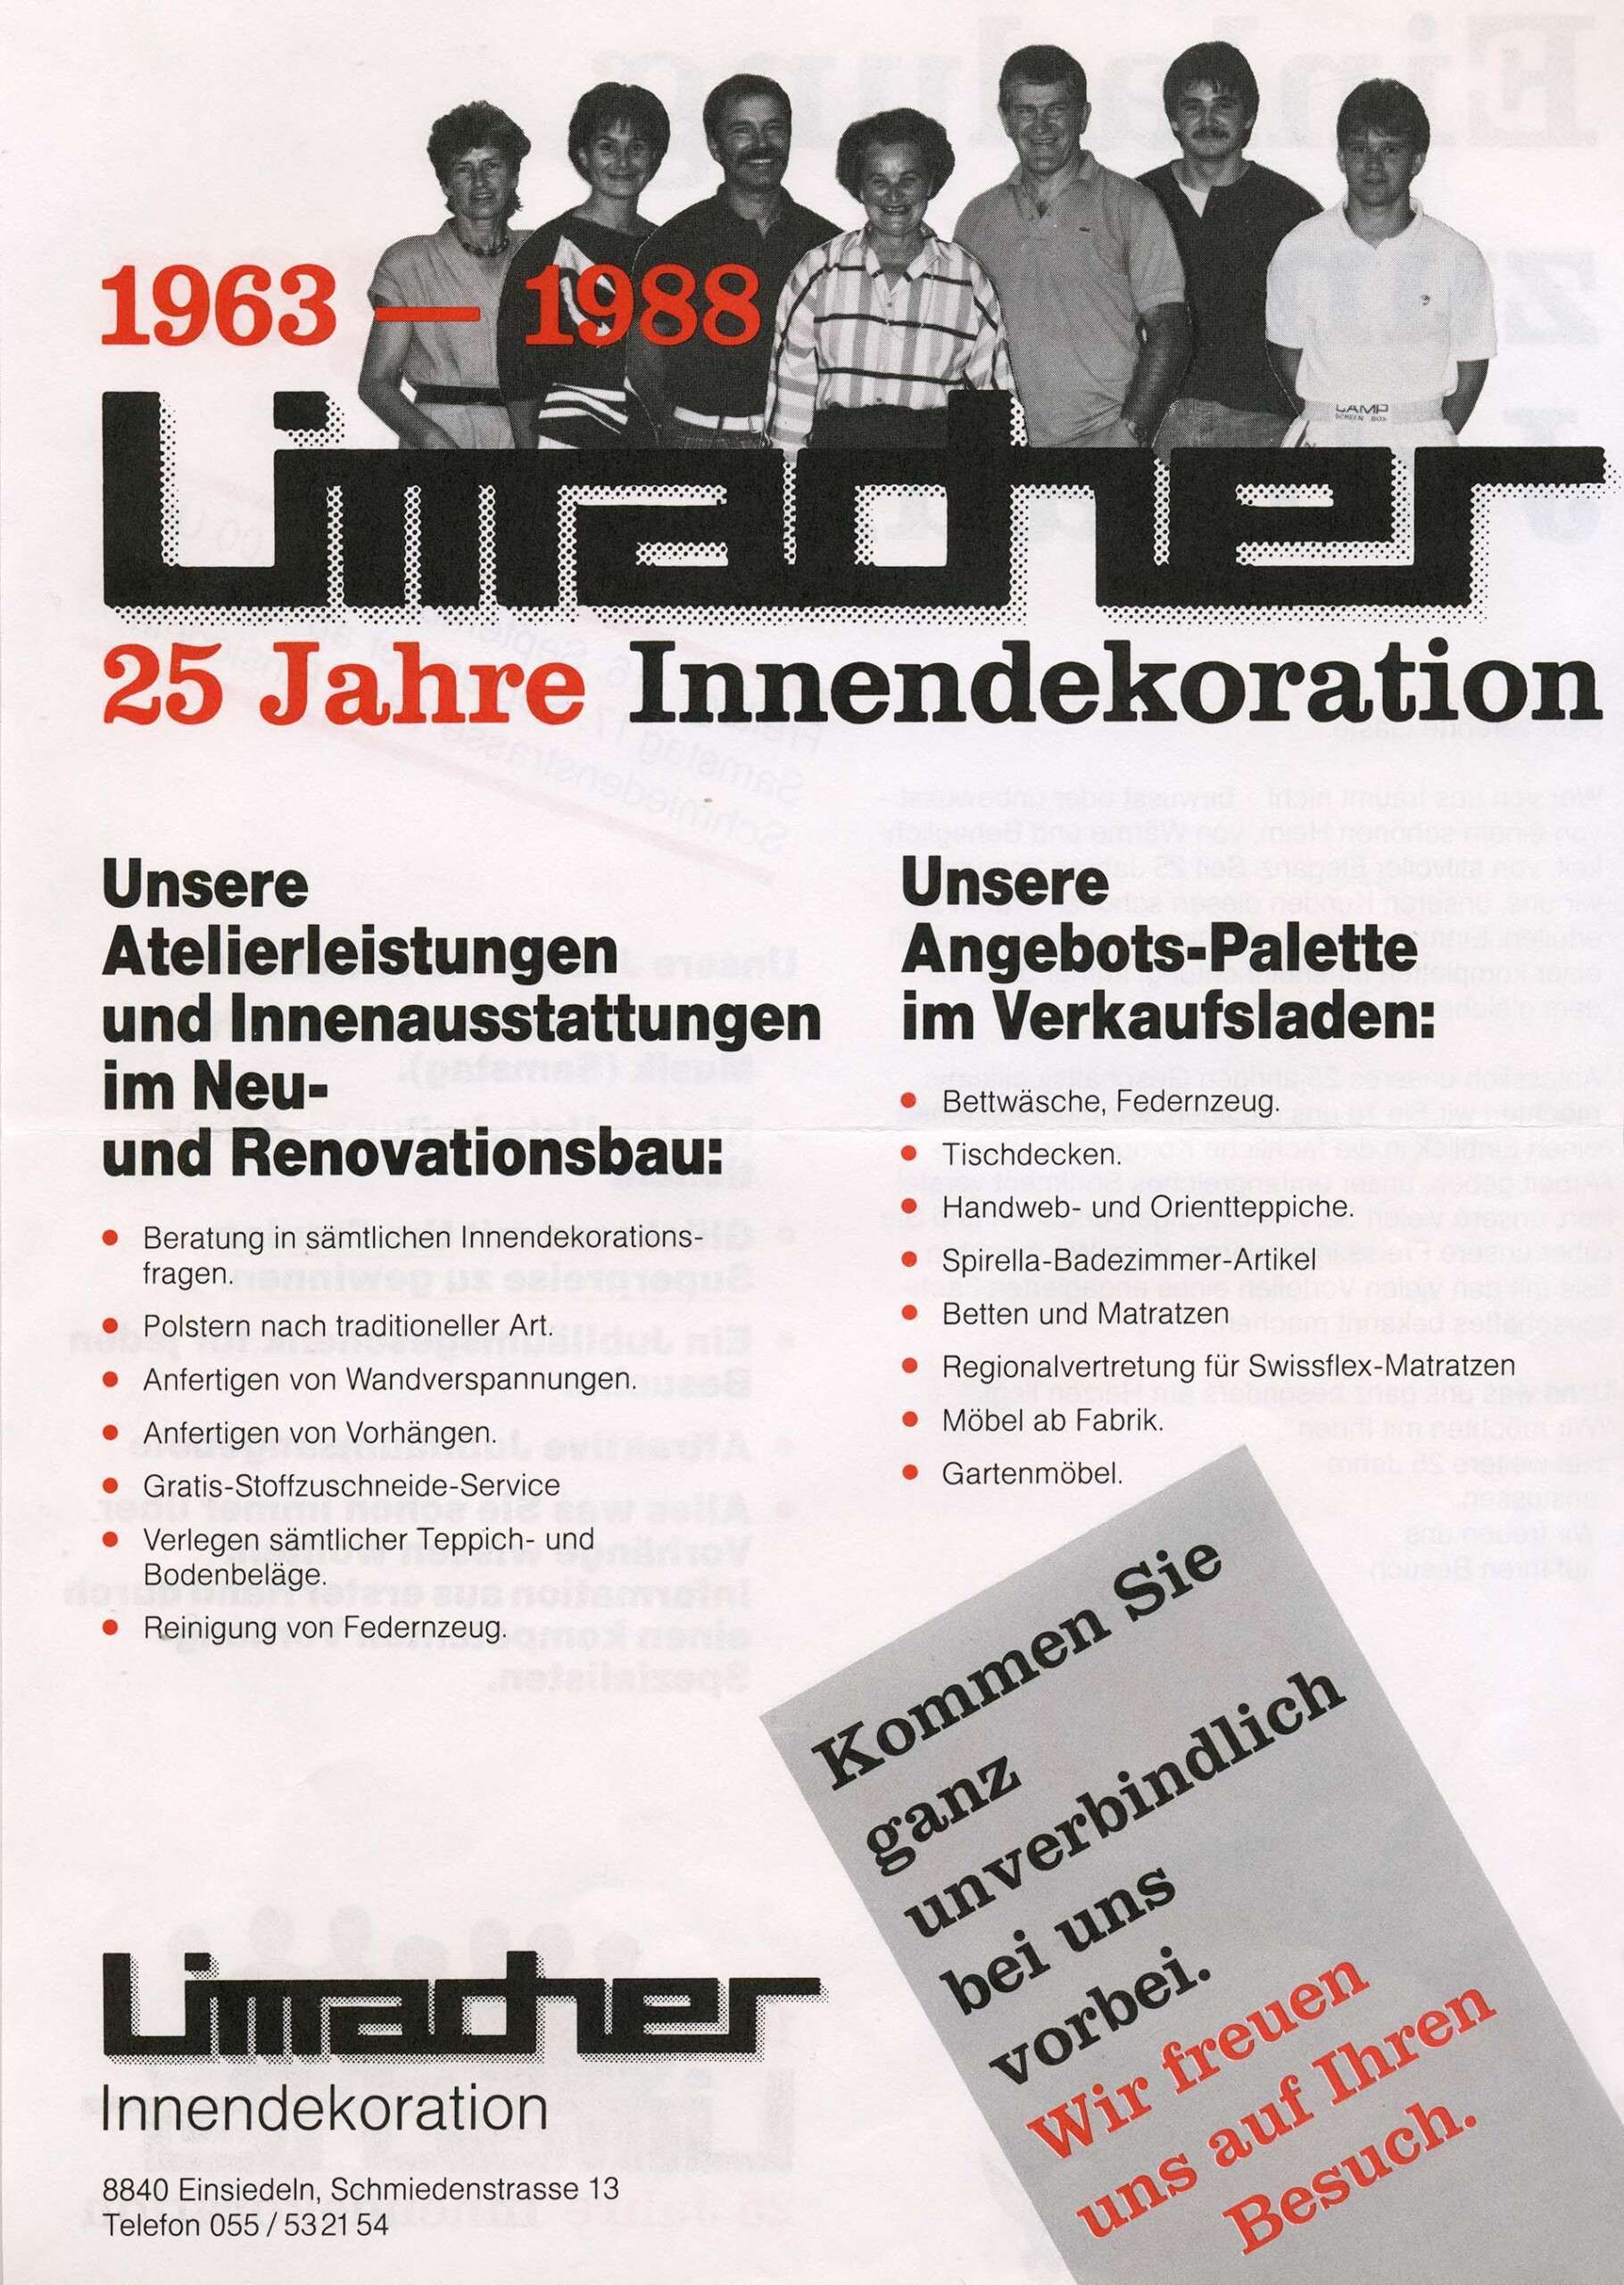 Limacher Innendekoration AG, Über Uns, Geschichte